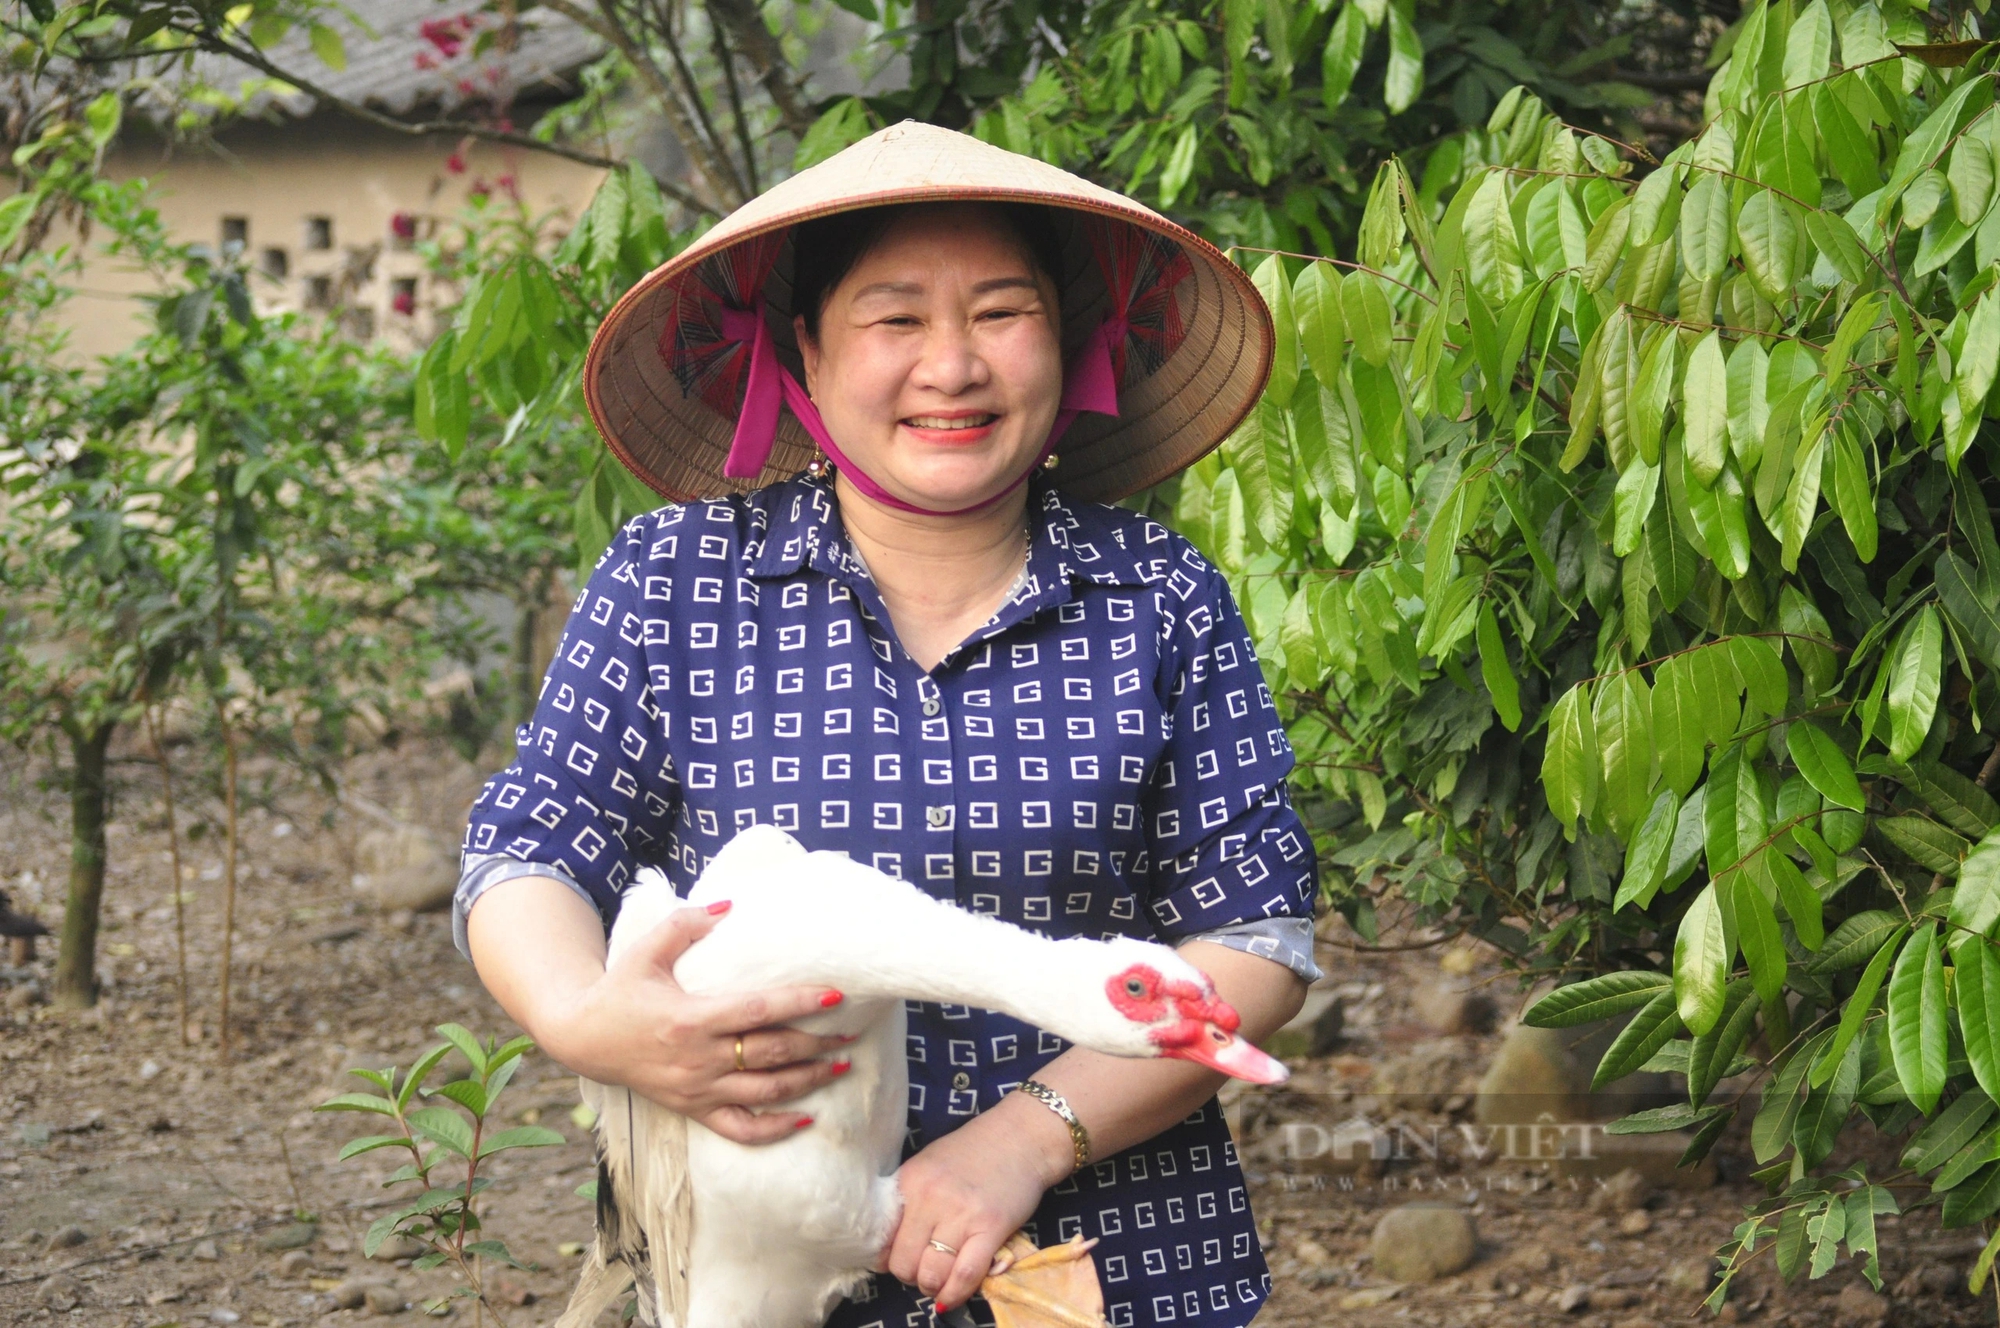 Nuôi giống ngan sao bản địa thơm ngon, nông dân một xã của tỉnh Quảng Ninh lắm lúc không có hàng mà bán- Ảnh 2.